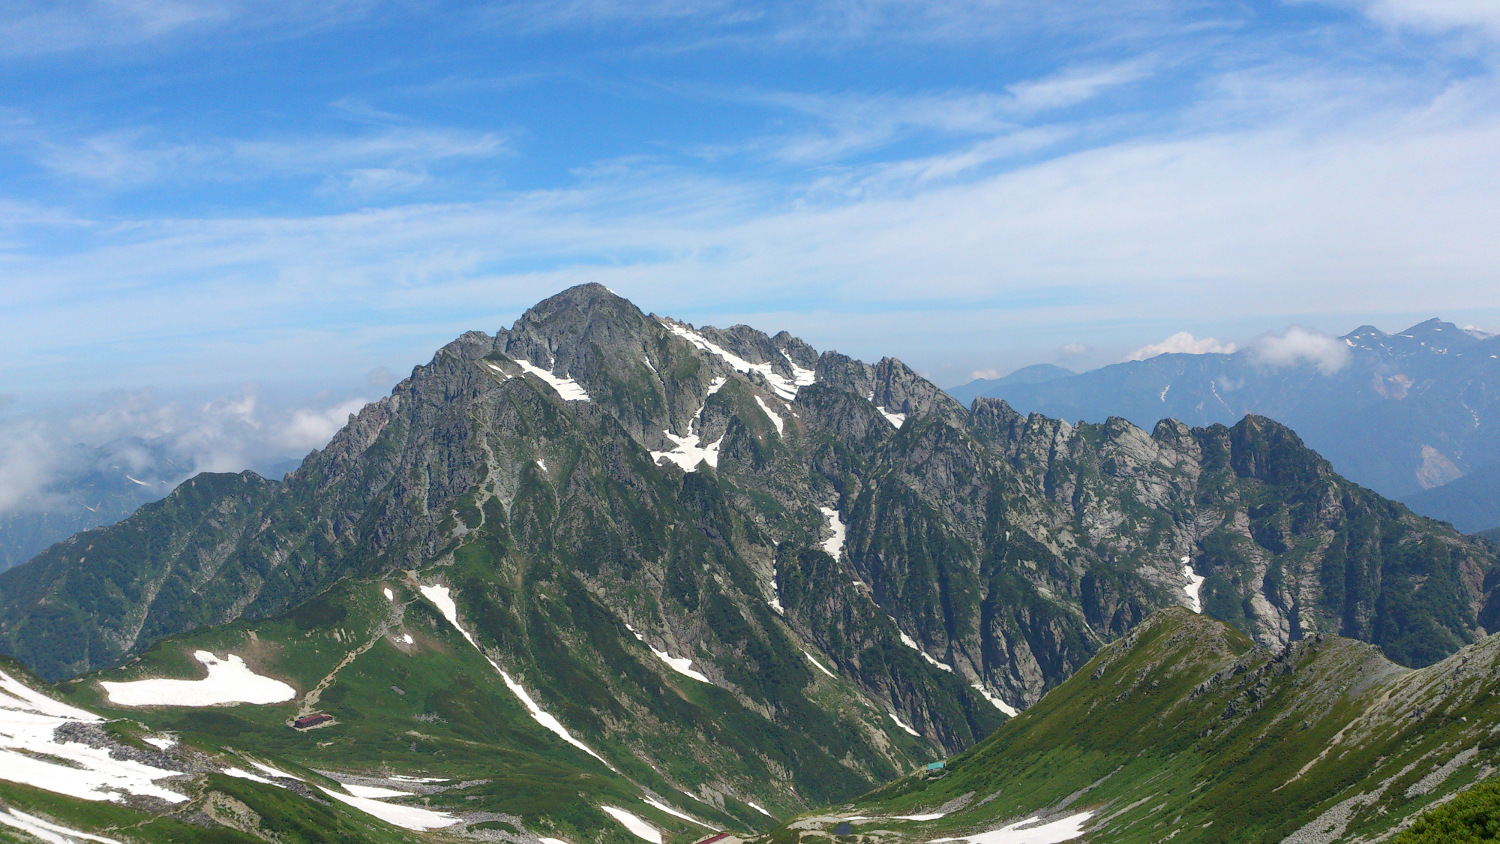 別山周辺から剱岳全景、8月なので緑が濃い、雪渓はそこそこ